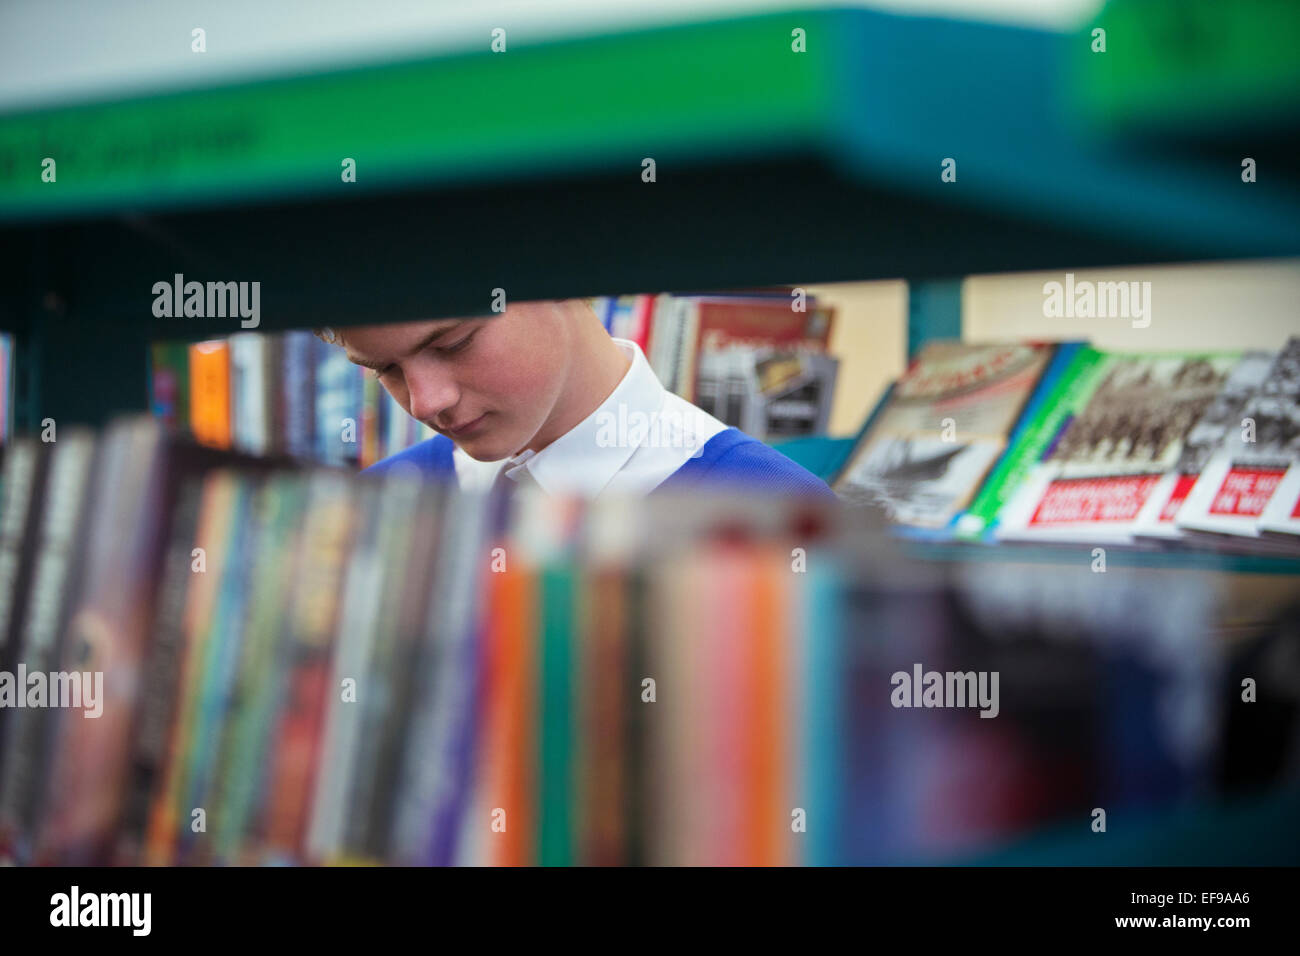 Schüler in der Bibliothek durch Buchregale gesehen Stockfoto